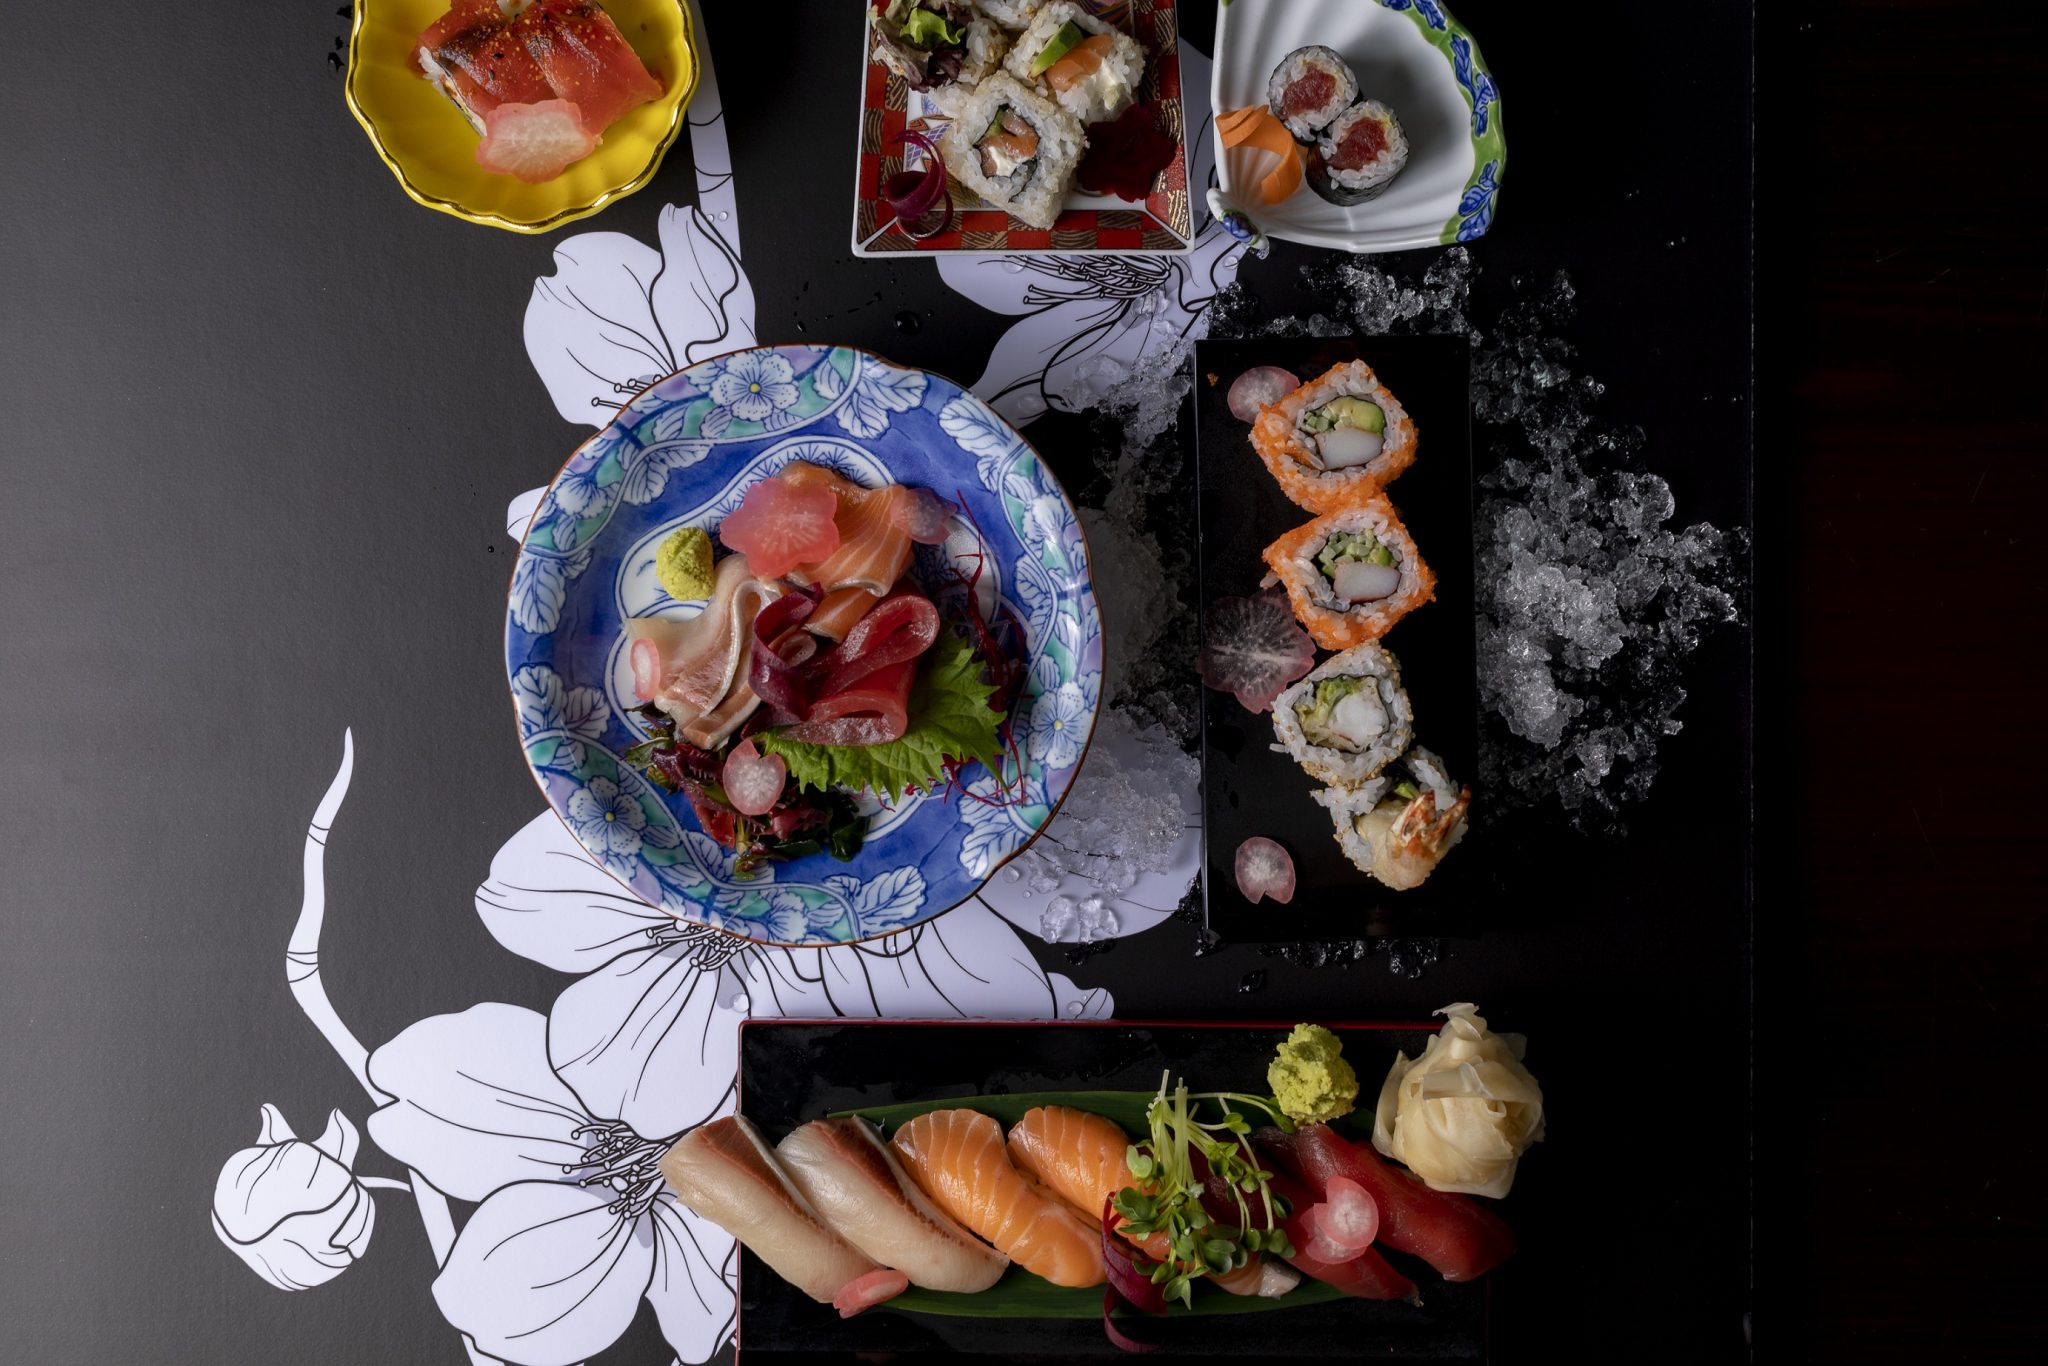 مطعم ماتسو الياباني يطلق برانش ساكورا إحتفاءاً بأزهار الكرز الموسمية